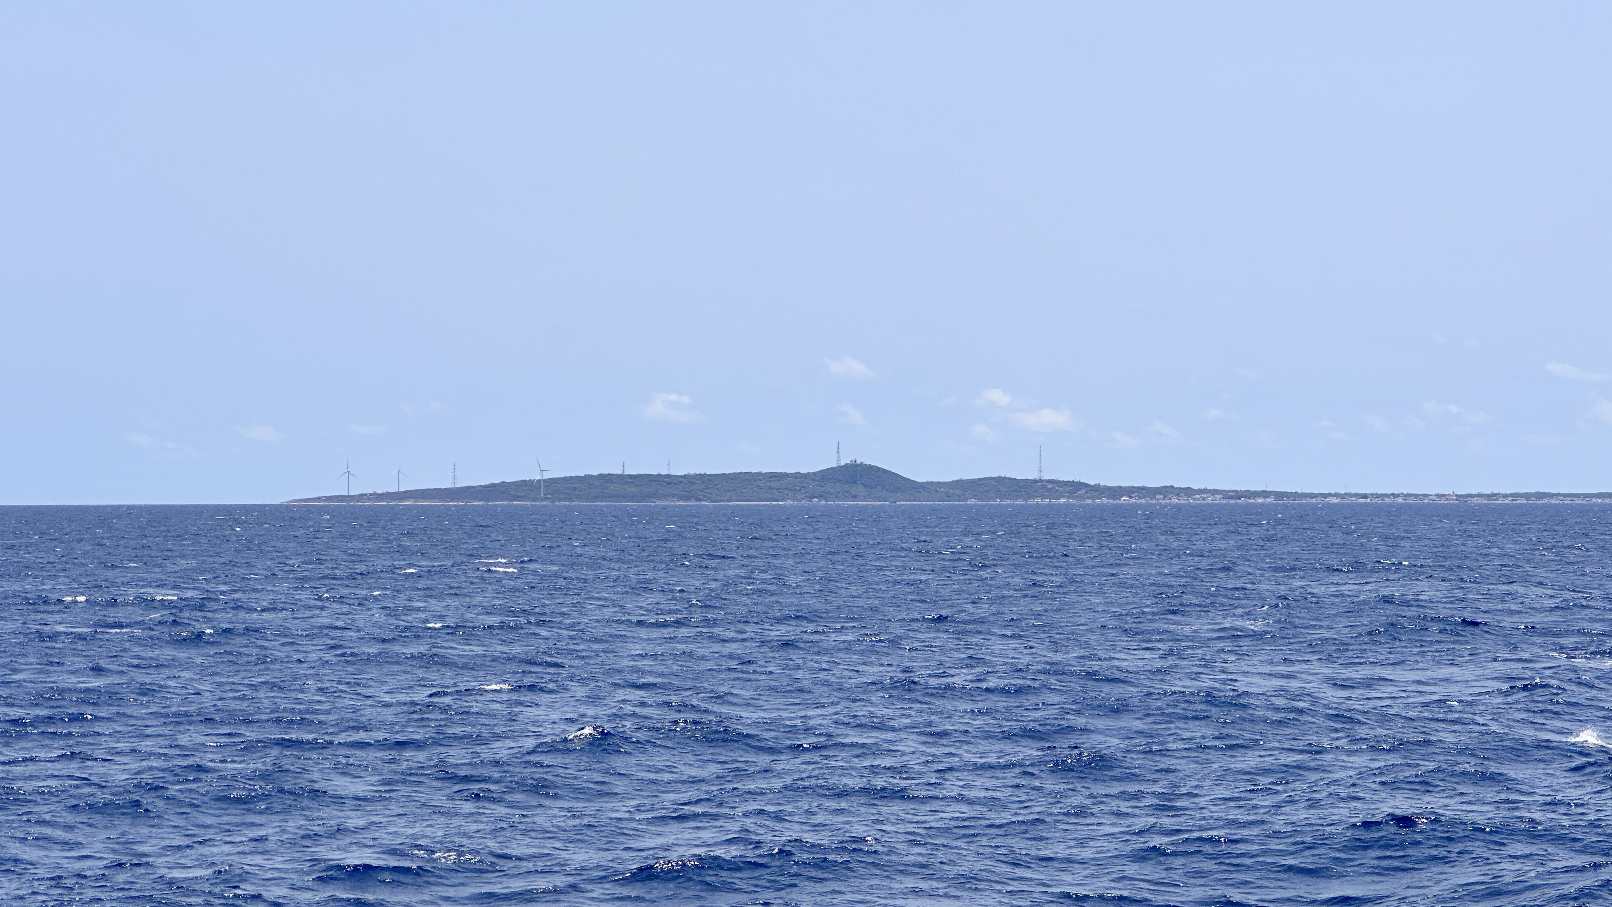 Đảo Phú Quý nhìn từ xa trên biển. Ảnh: Duy Tuấn